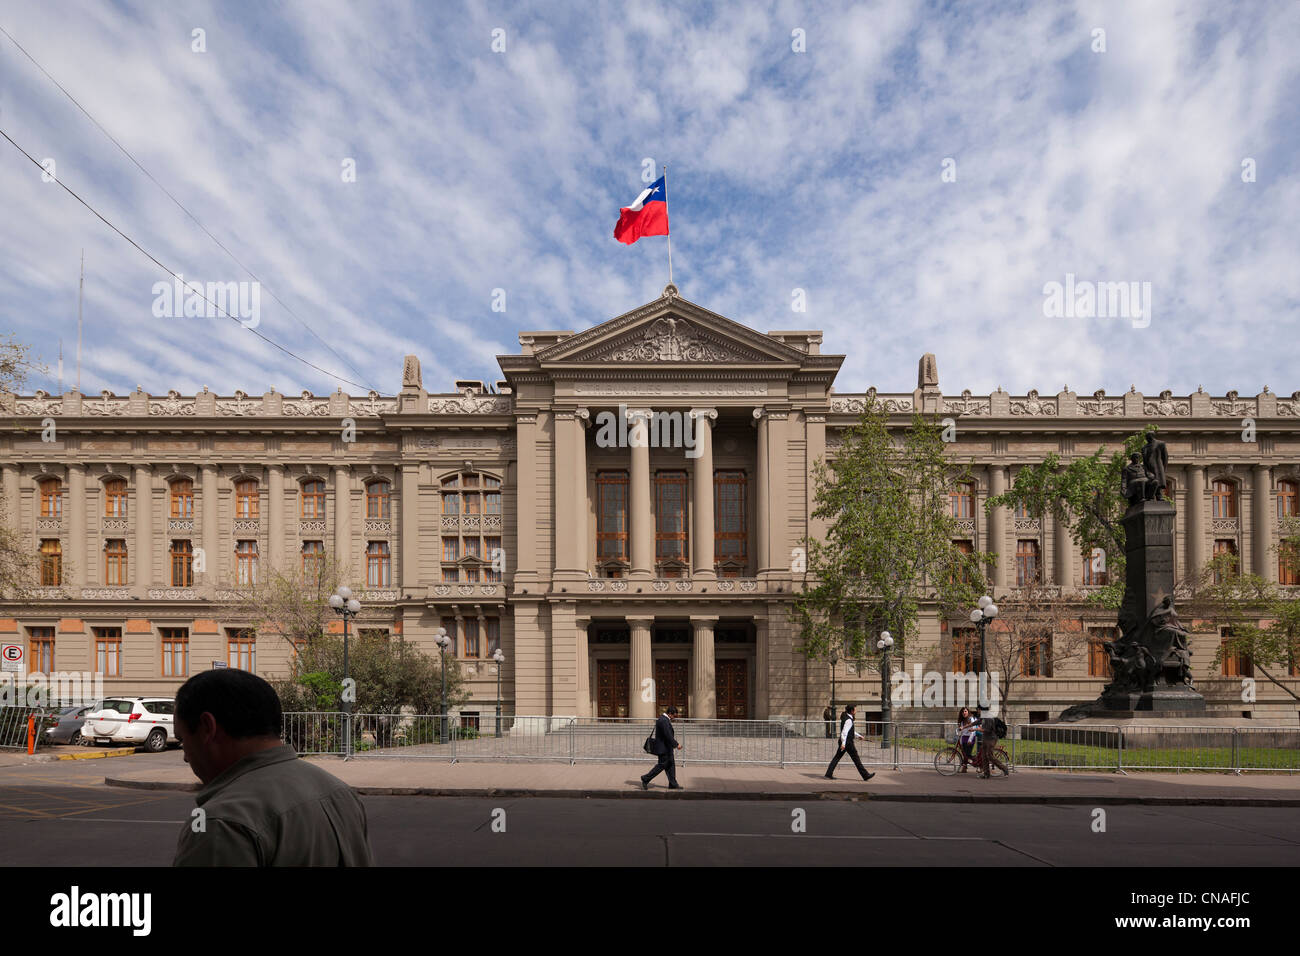 Chilenische Supreme Court Gebäude; Palais de Justice; Tribunales de Justicia, in Santiago de Chile Stockfoto